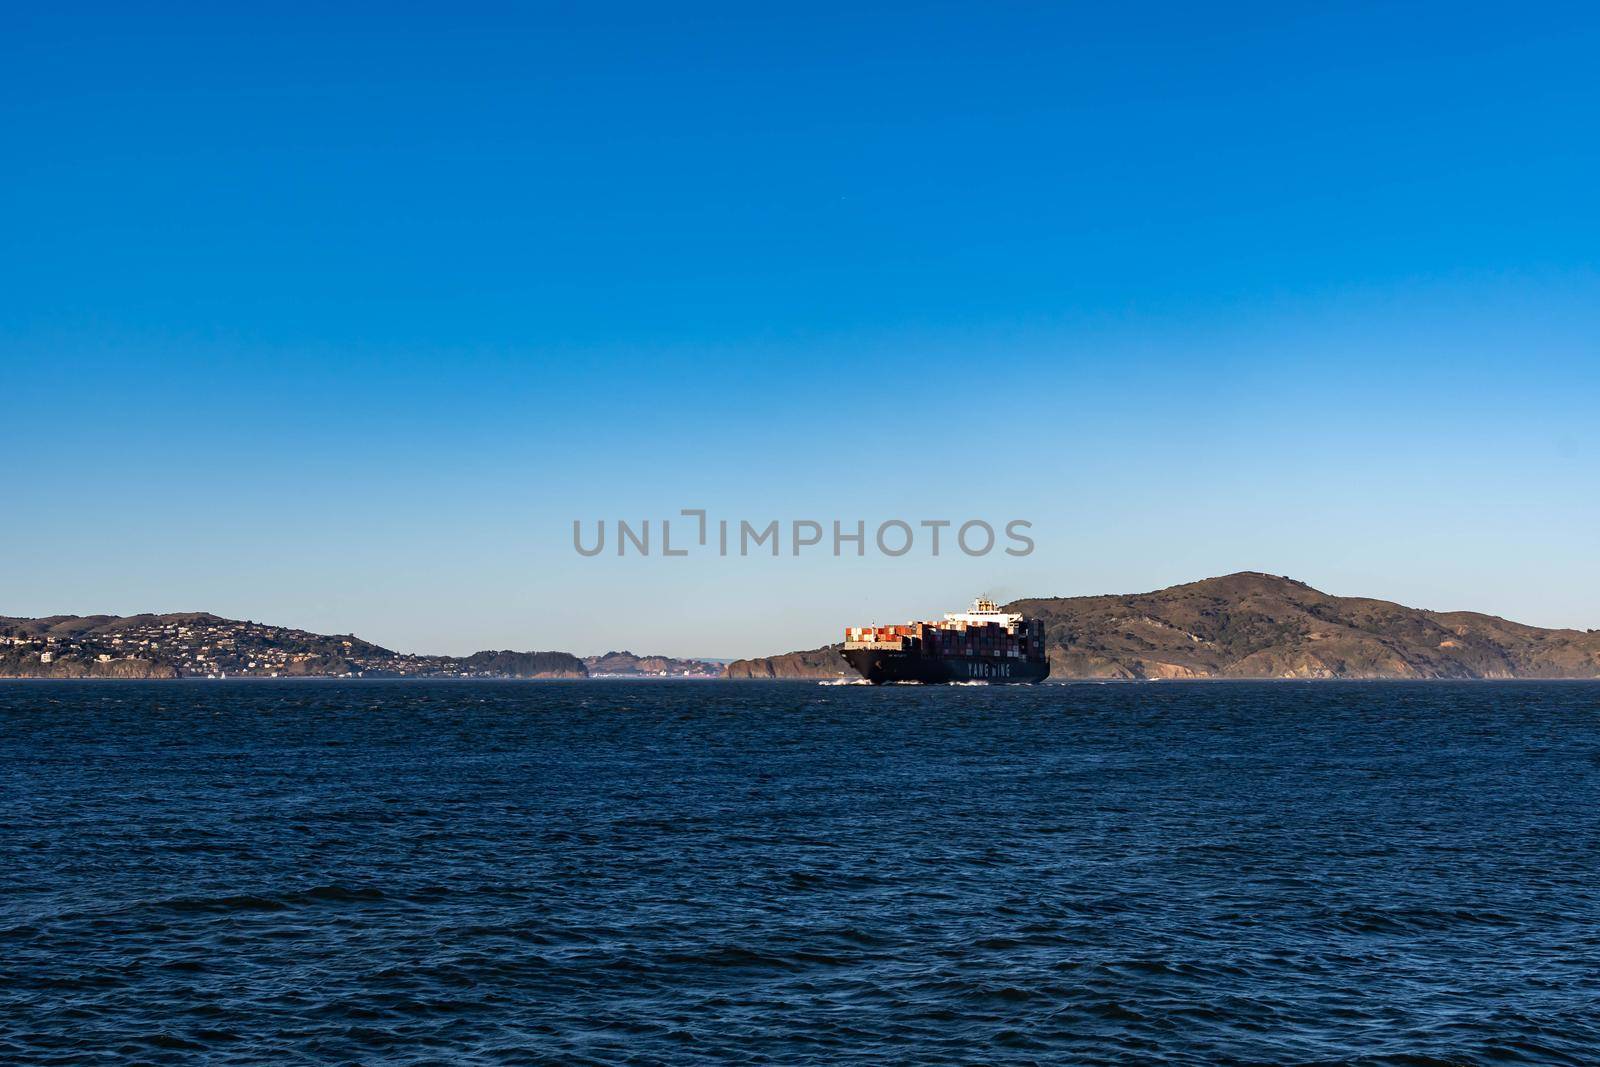 Container ship while cruising the pacific ocean near San Francisco Bay, San Francisco CA USA, March 30, 2020